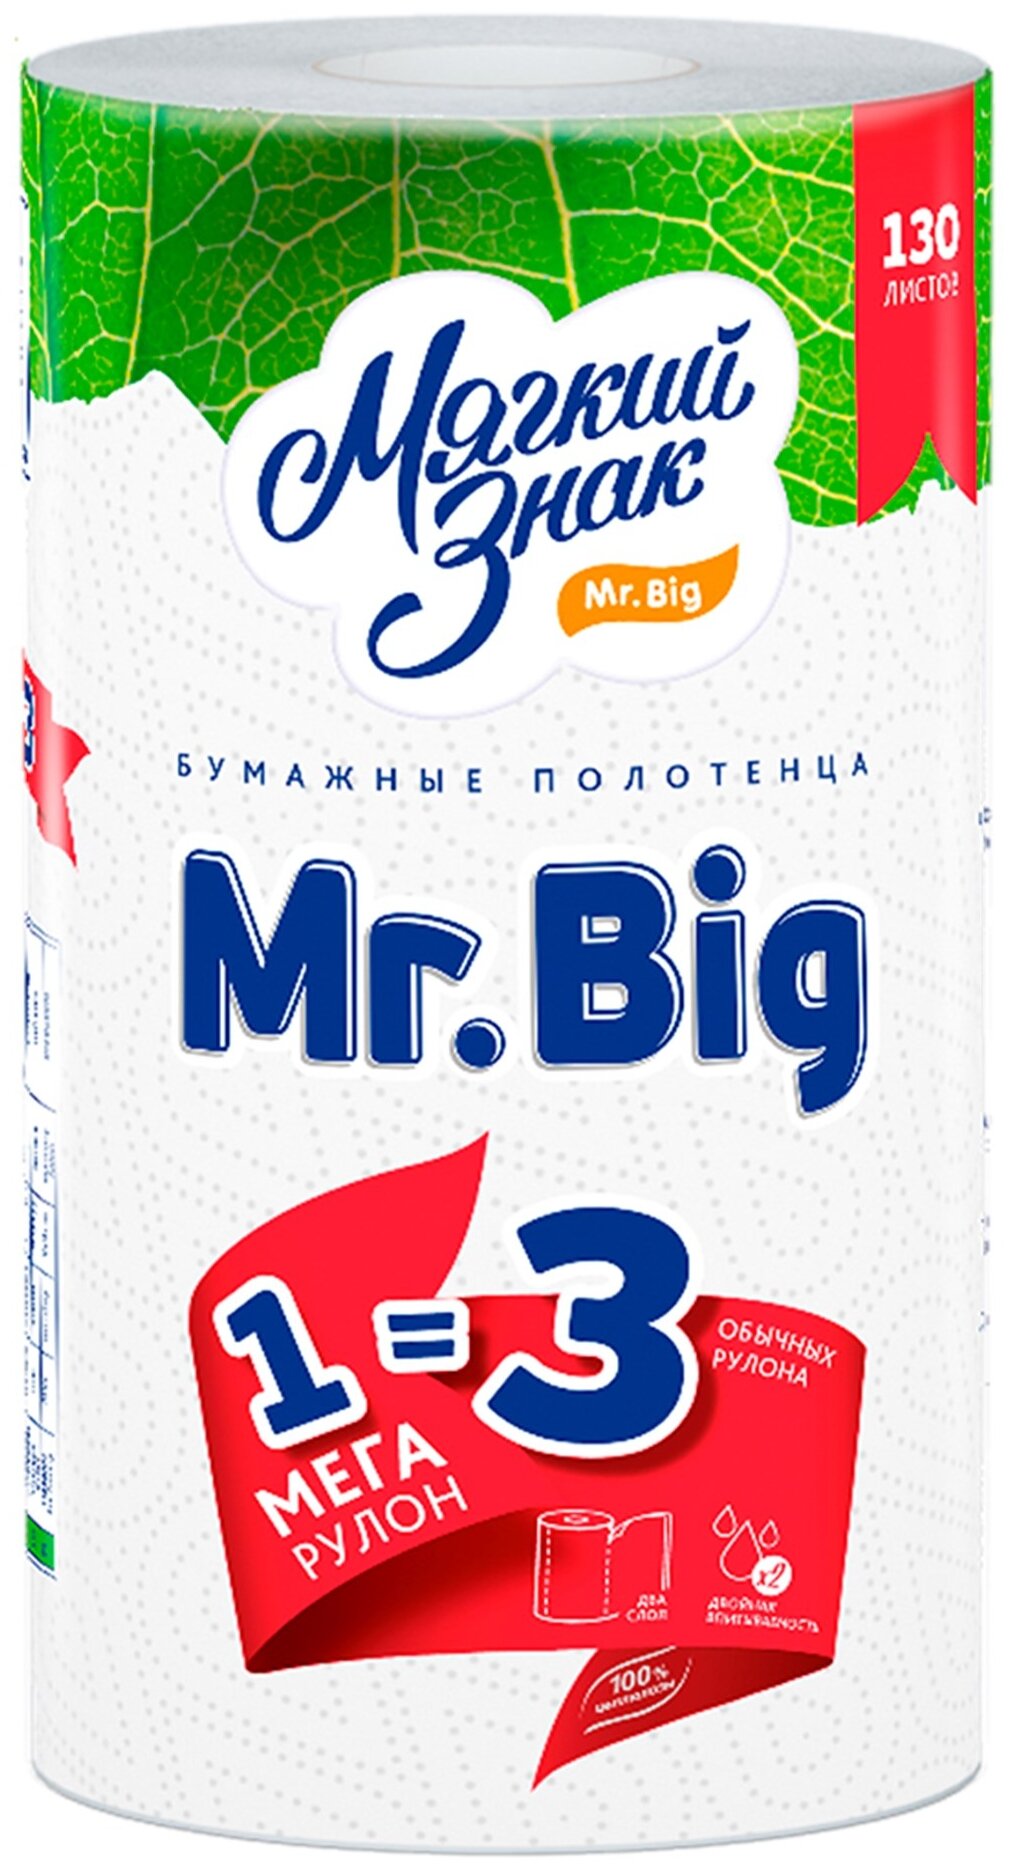     Mr.BIG 2  1 .